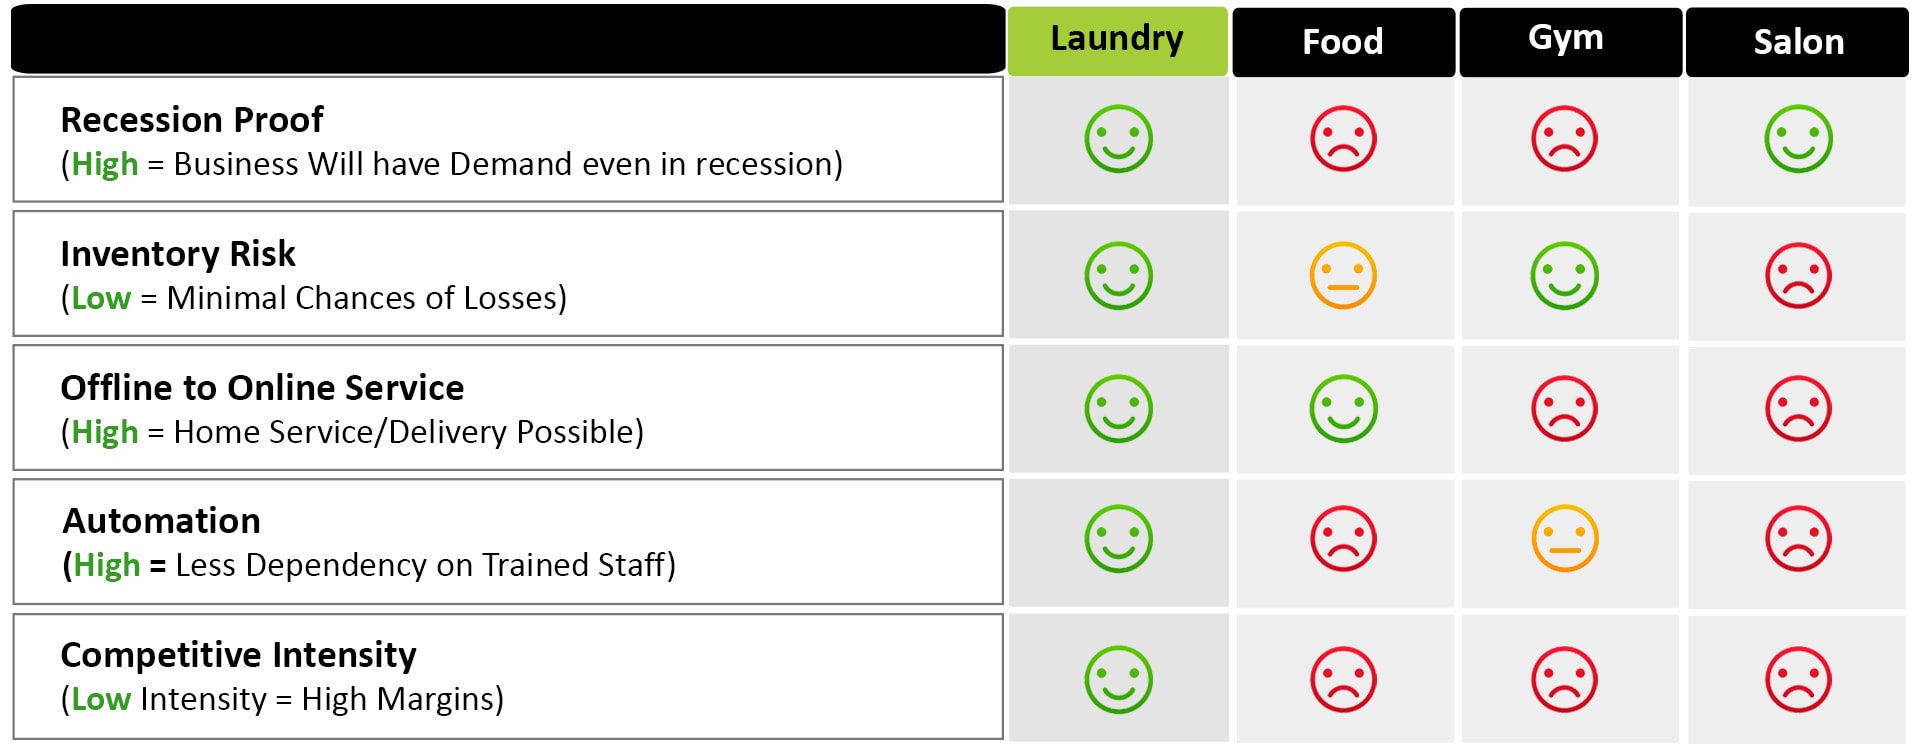 Tumbledry Laundry Franchise - India's Most Profitable Franchise